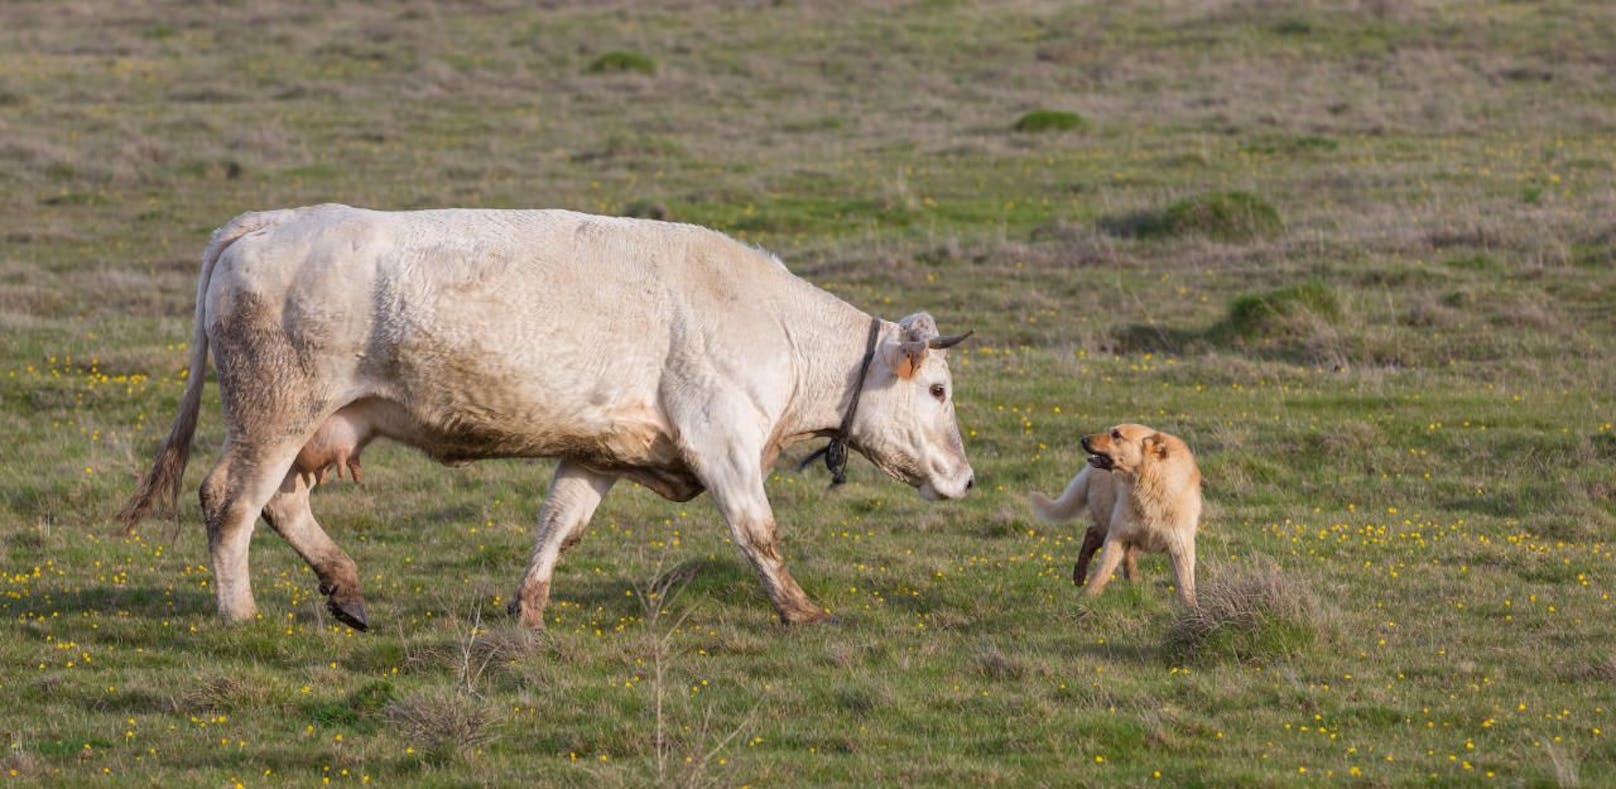 Kühe sehen in Hunden einen natürlichen Feind